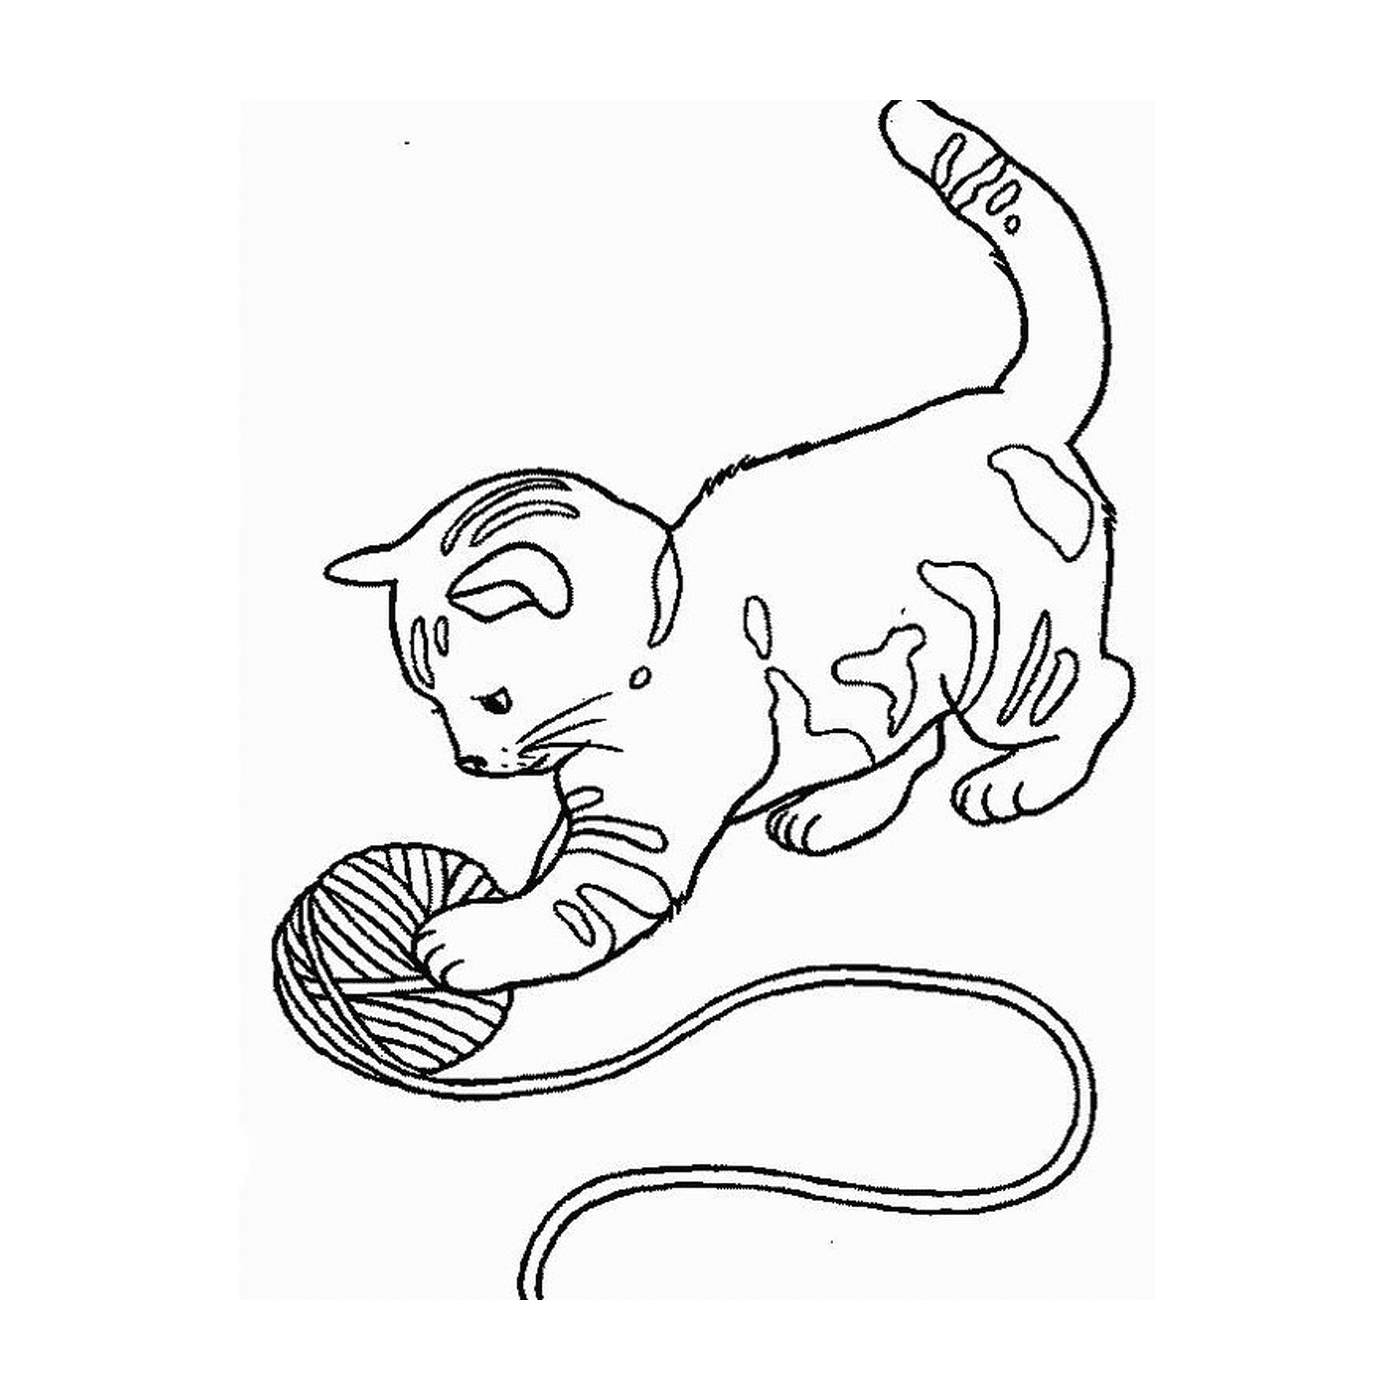  Un gattino che gioca con una palla 